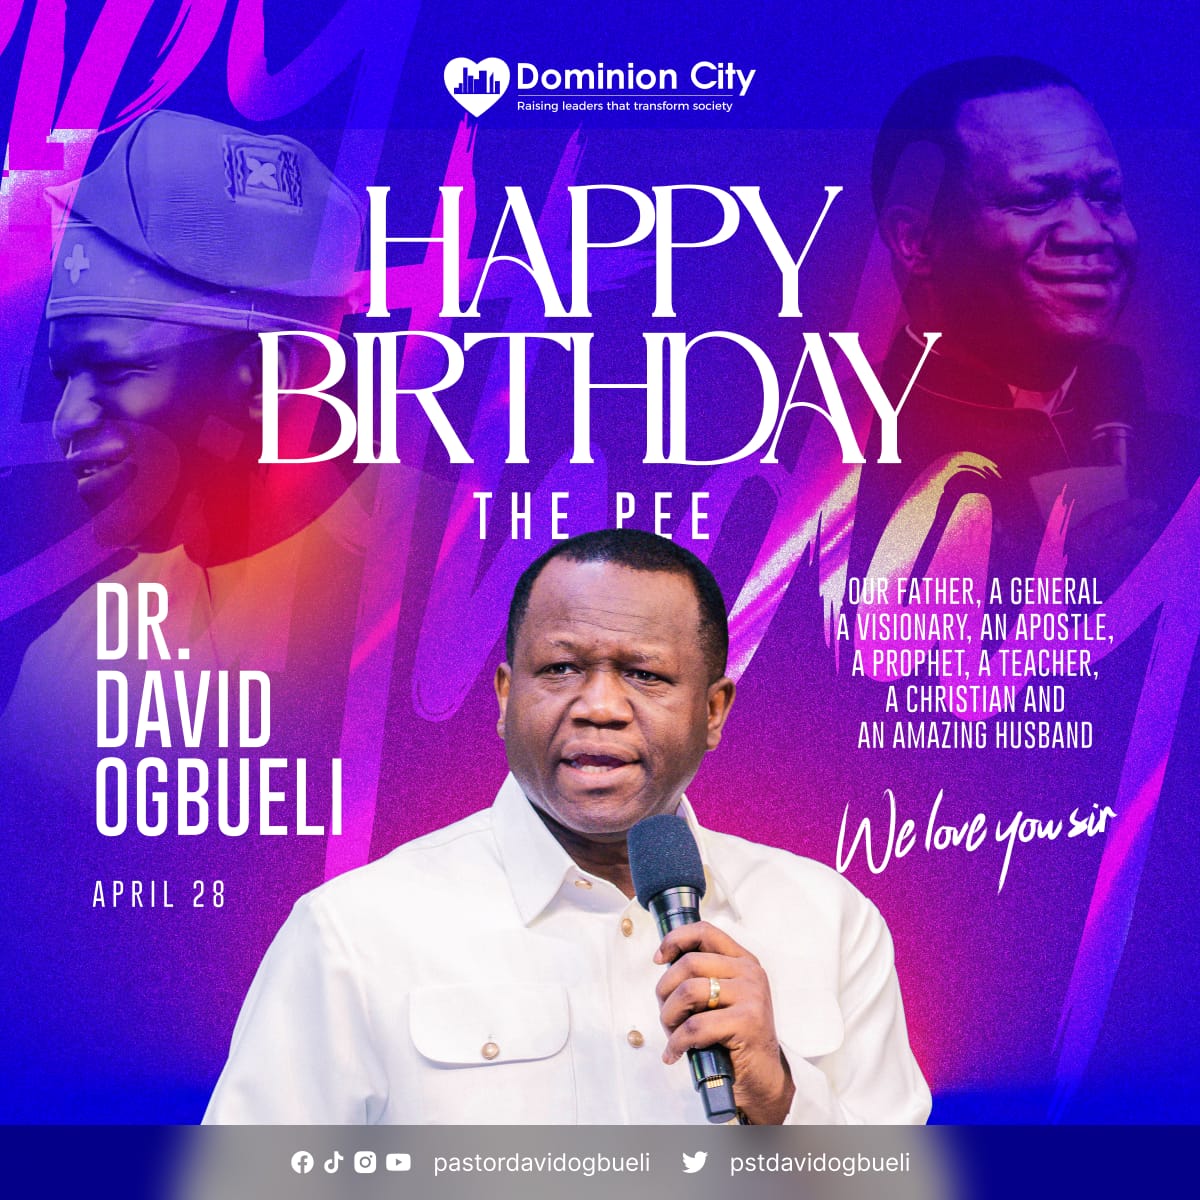 Happy birthday Daddy 🎊🎊

Thank you Sir @pstdavidogbueli

#HappyBirthday
#PastorDavidOgbueli
#DominionCity